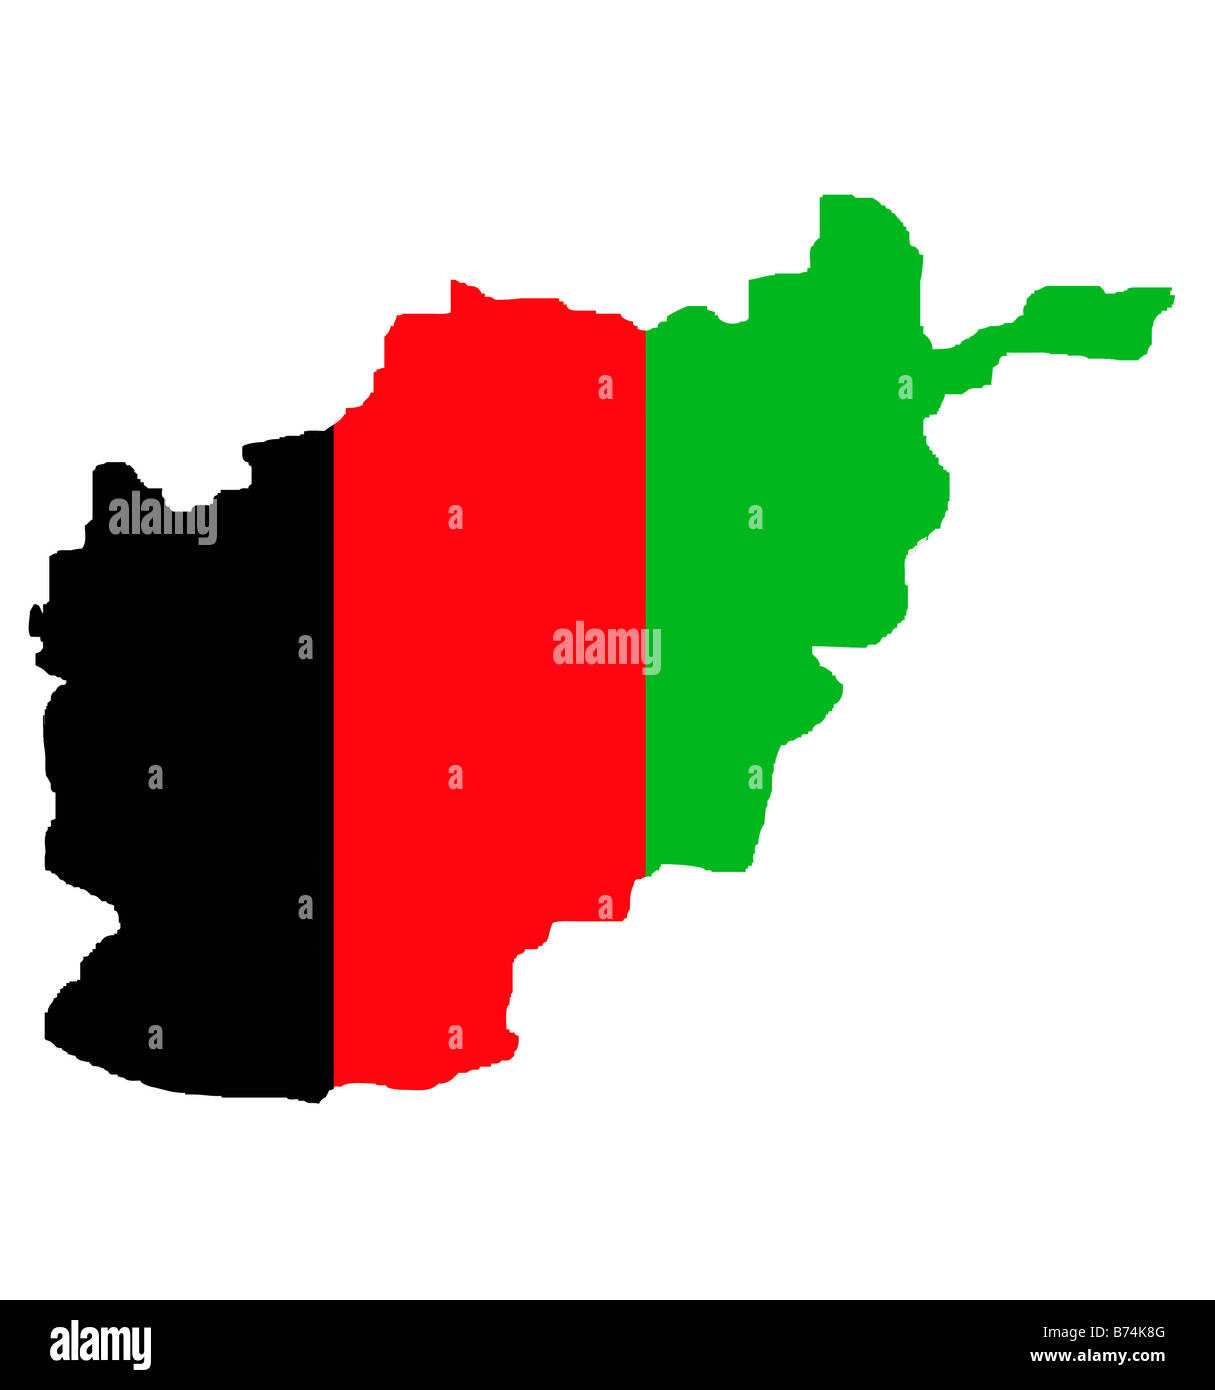 République islamique d'Afghanistan site contours en couleurs de drapeau national Banque D'Images